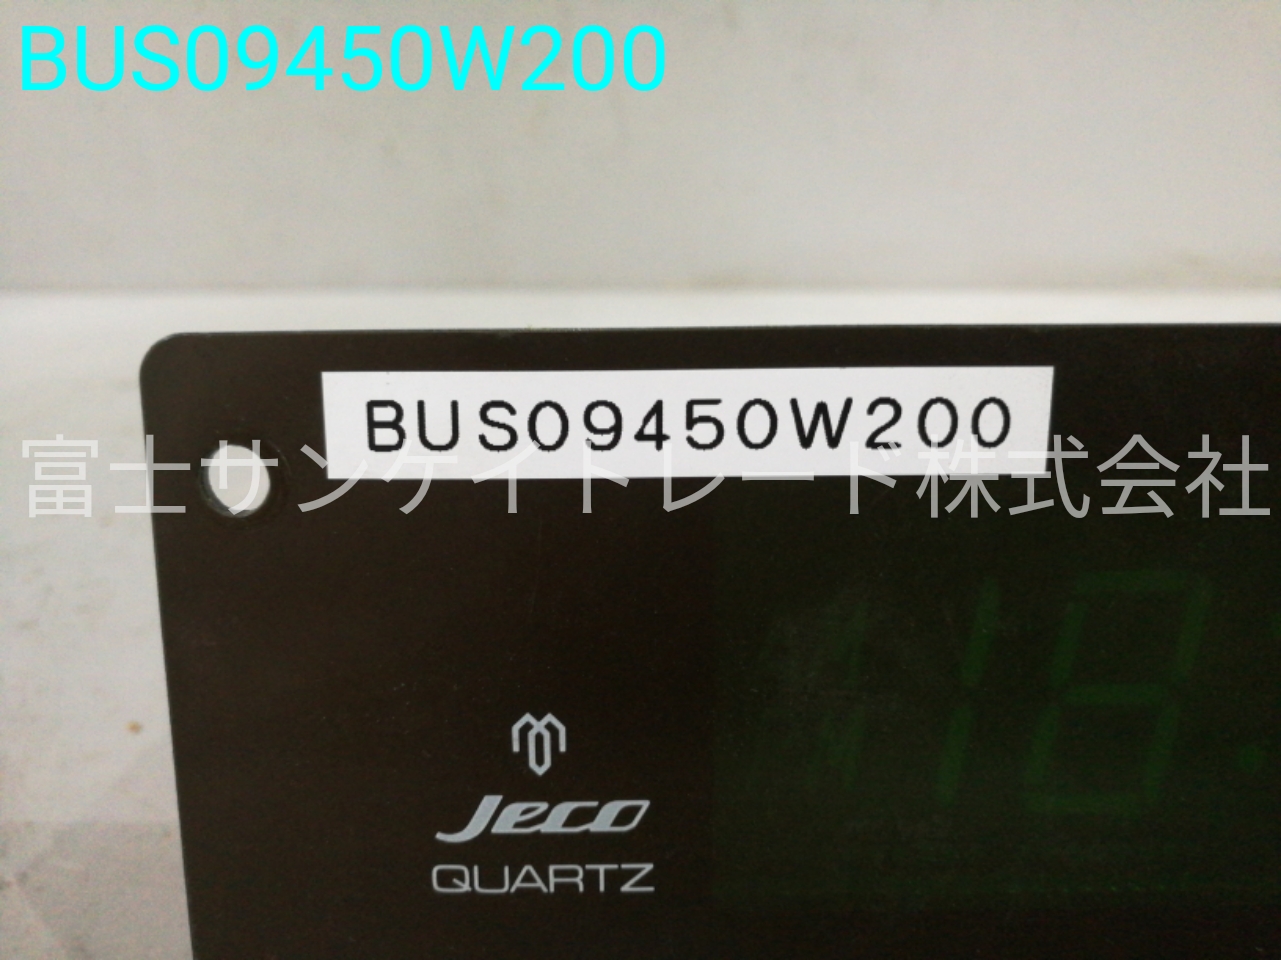 BUS09450W200